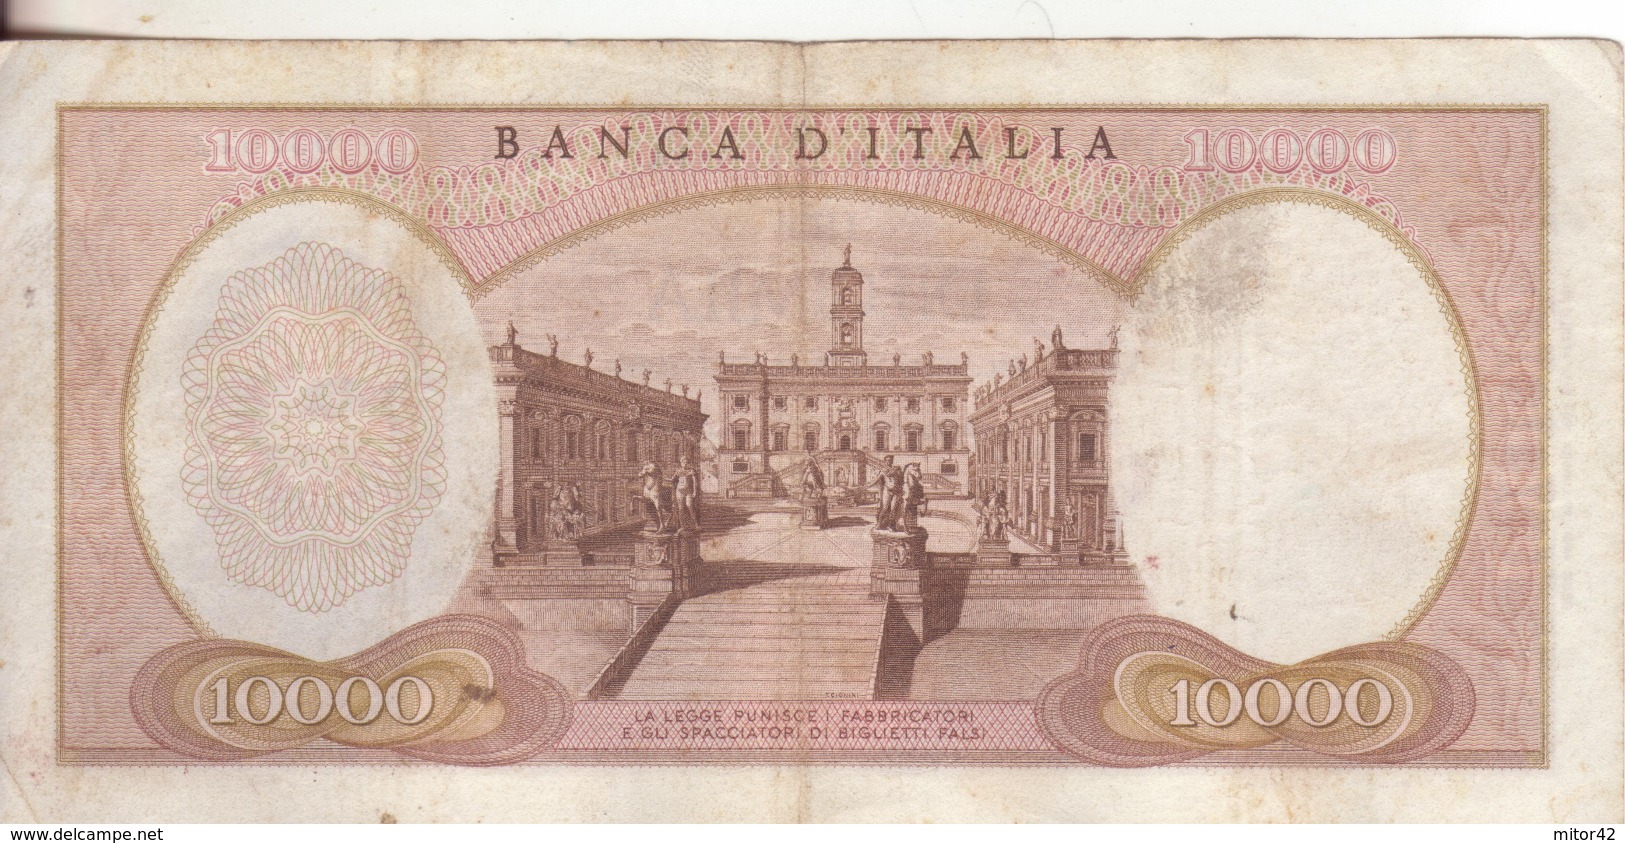 67*-Cartamoneta-Banconota Italia Repubblica Da L10.000 Michelangelo 27.7.64-Catalogata Rara-Condizione:Circolata - 10.000 Lire